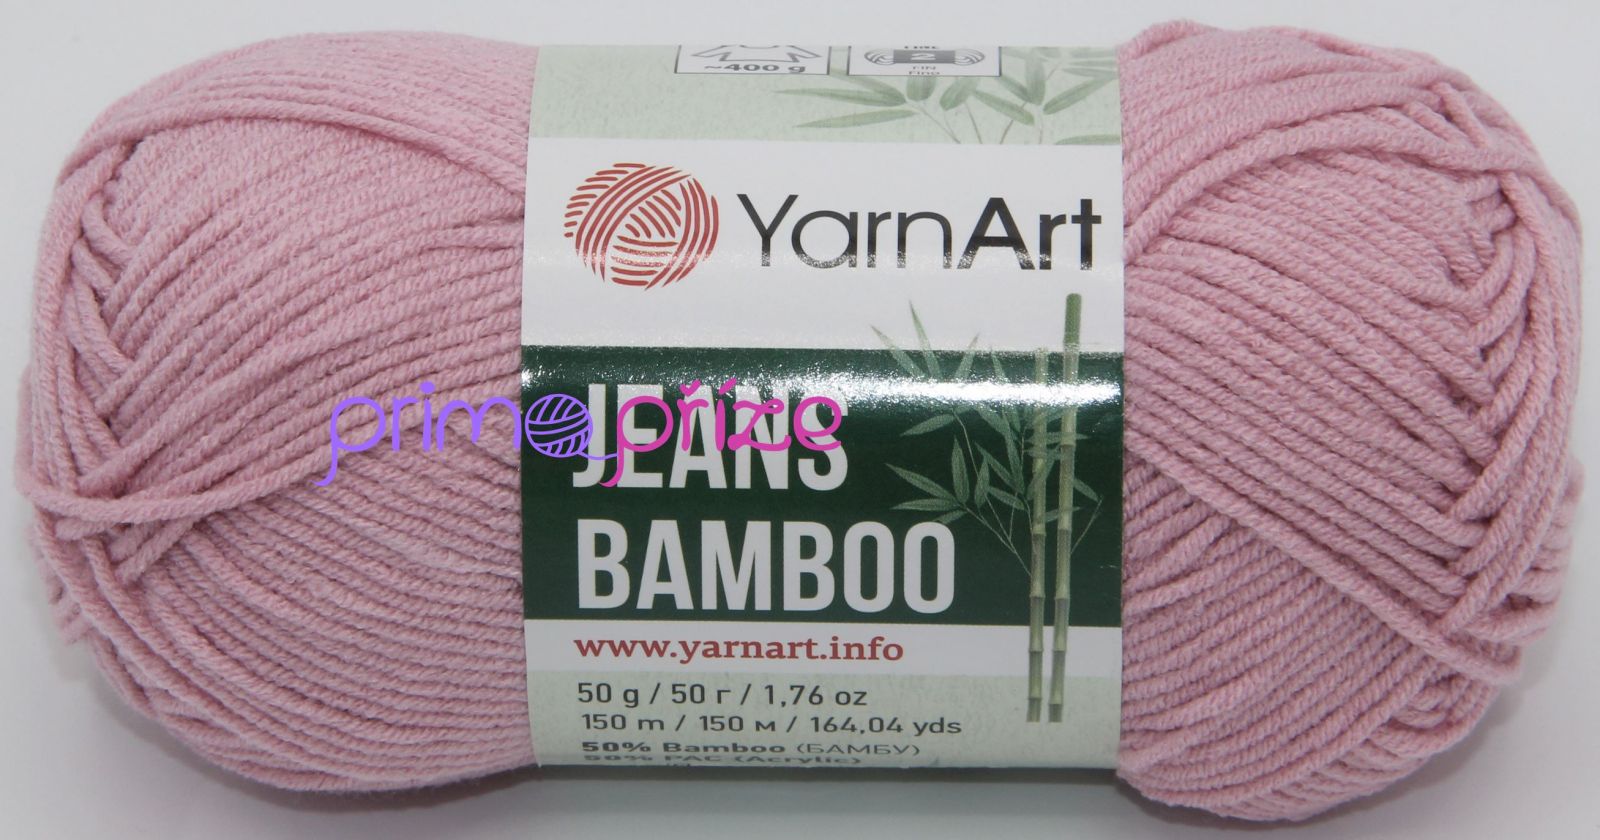 YarnArt Jeans Bamboo 110 starorůžová